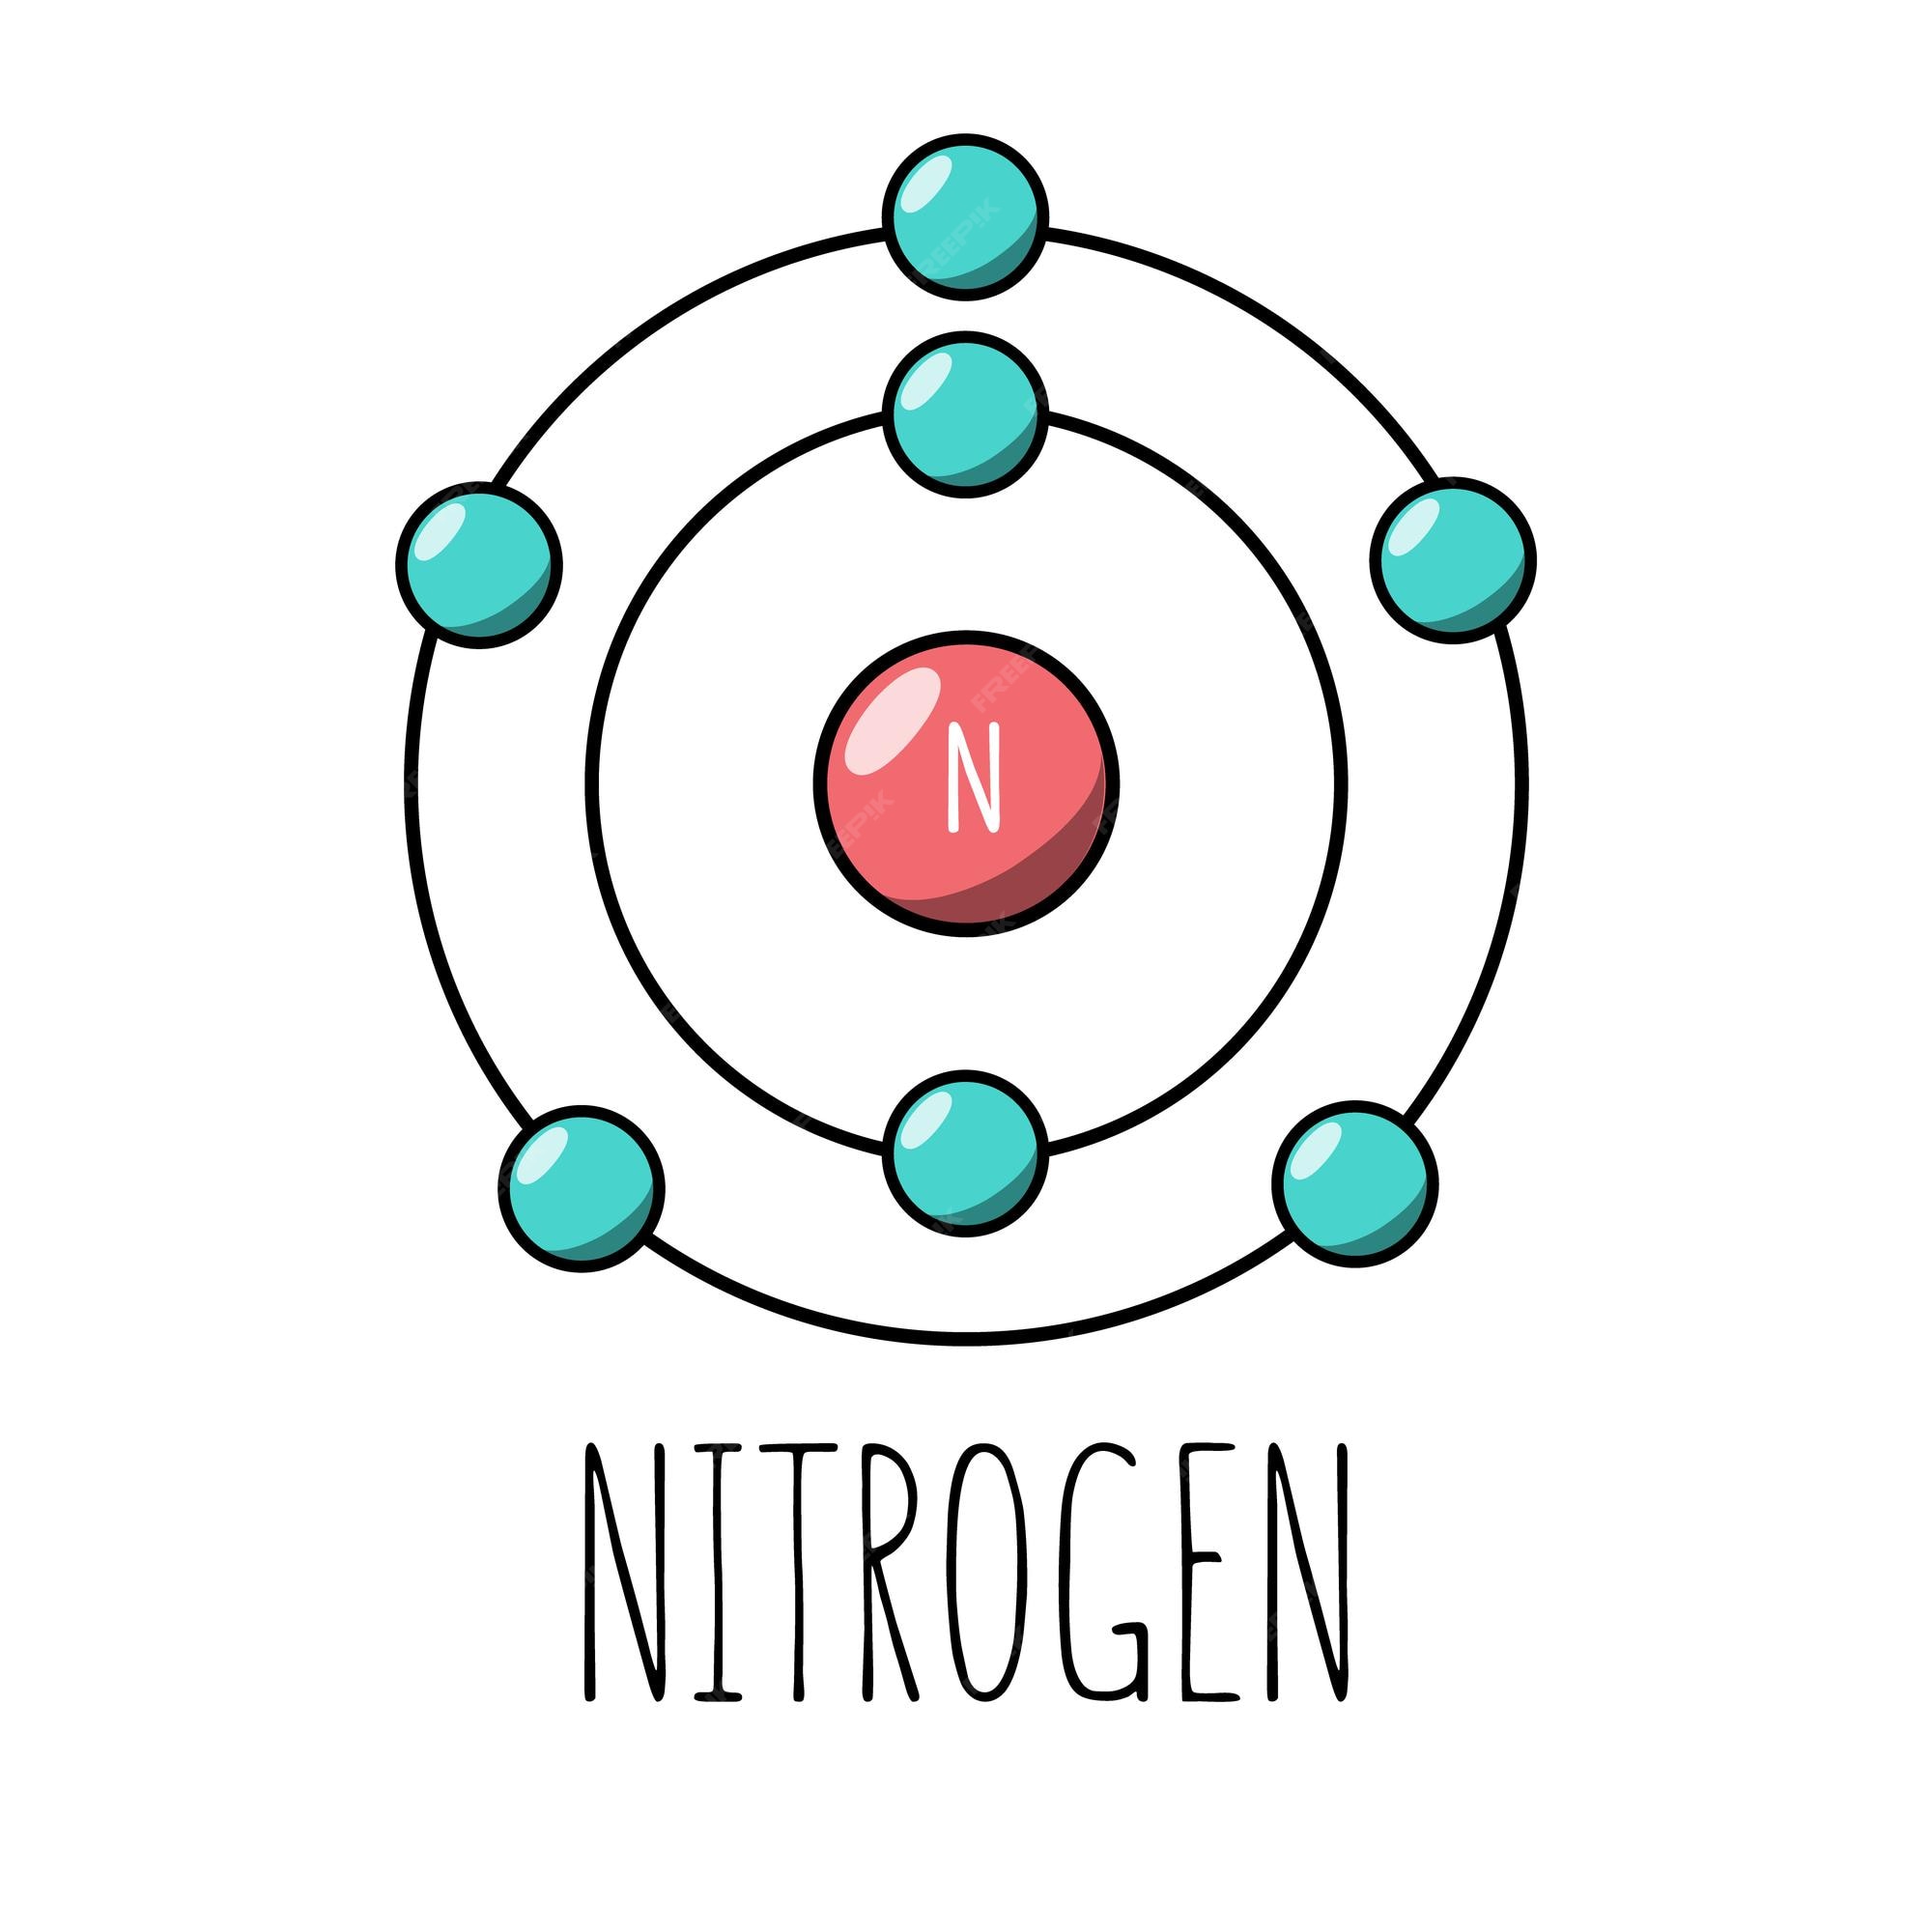 Modelo de bohr del átomo de nitrógeno | Vector Premium